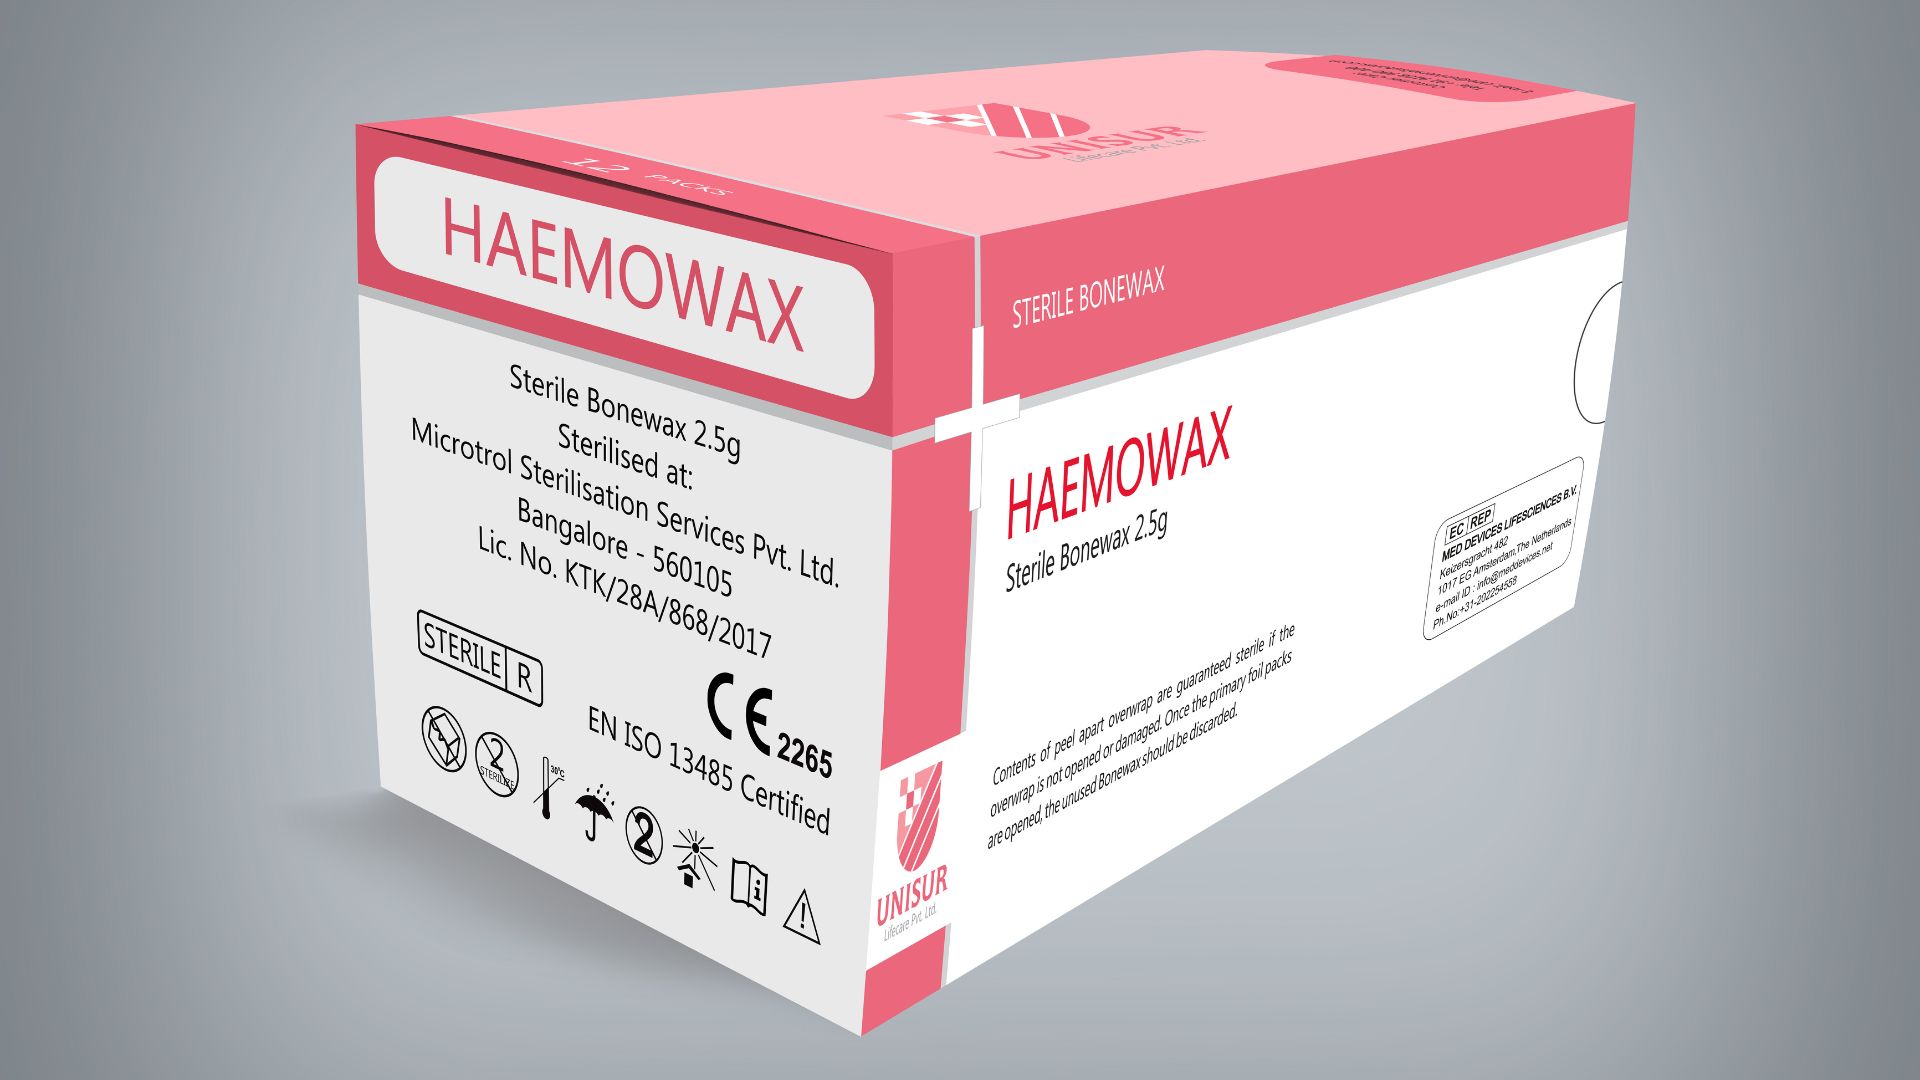 Sterile Bonewax 2.5g (Haemowax)